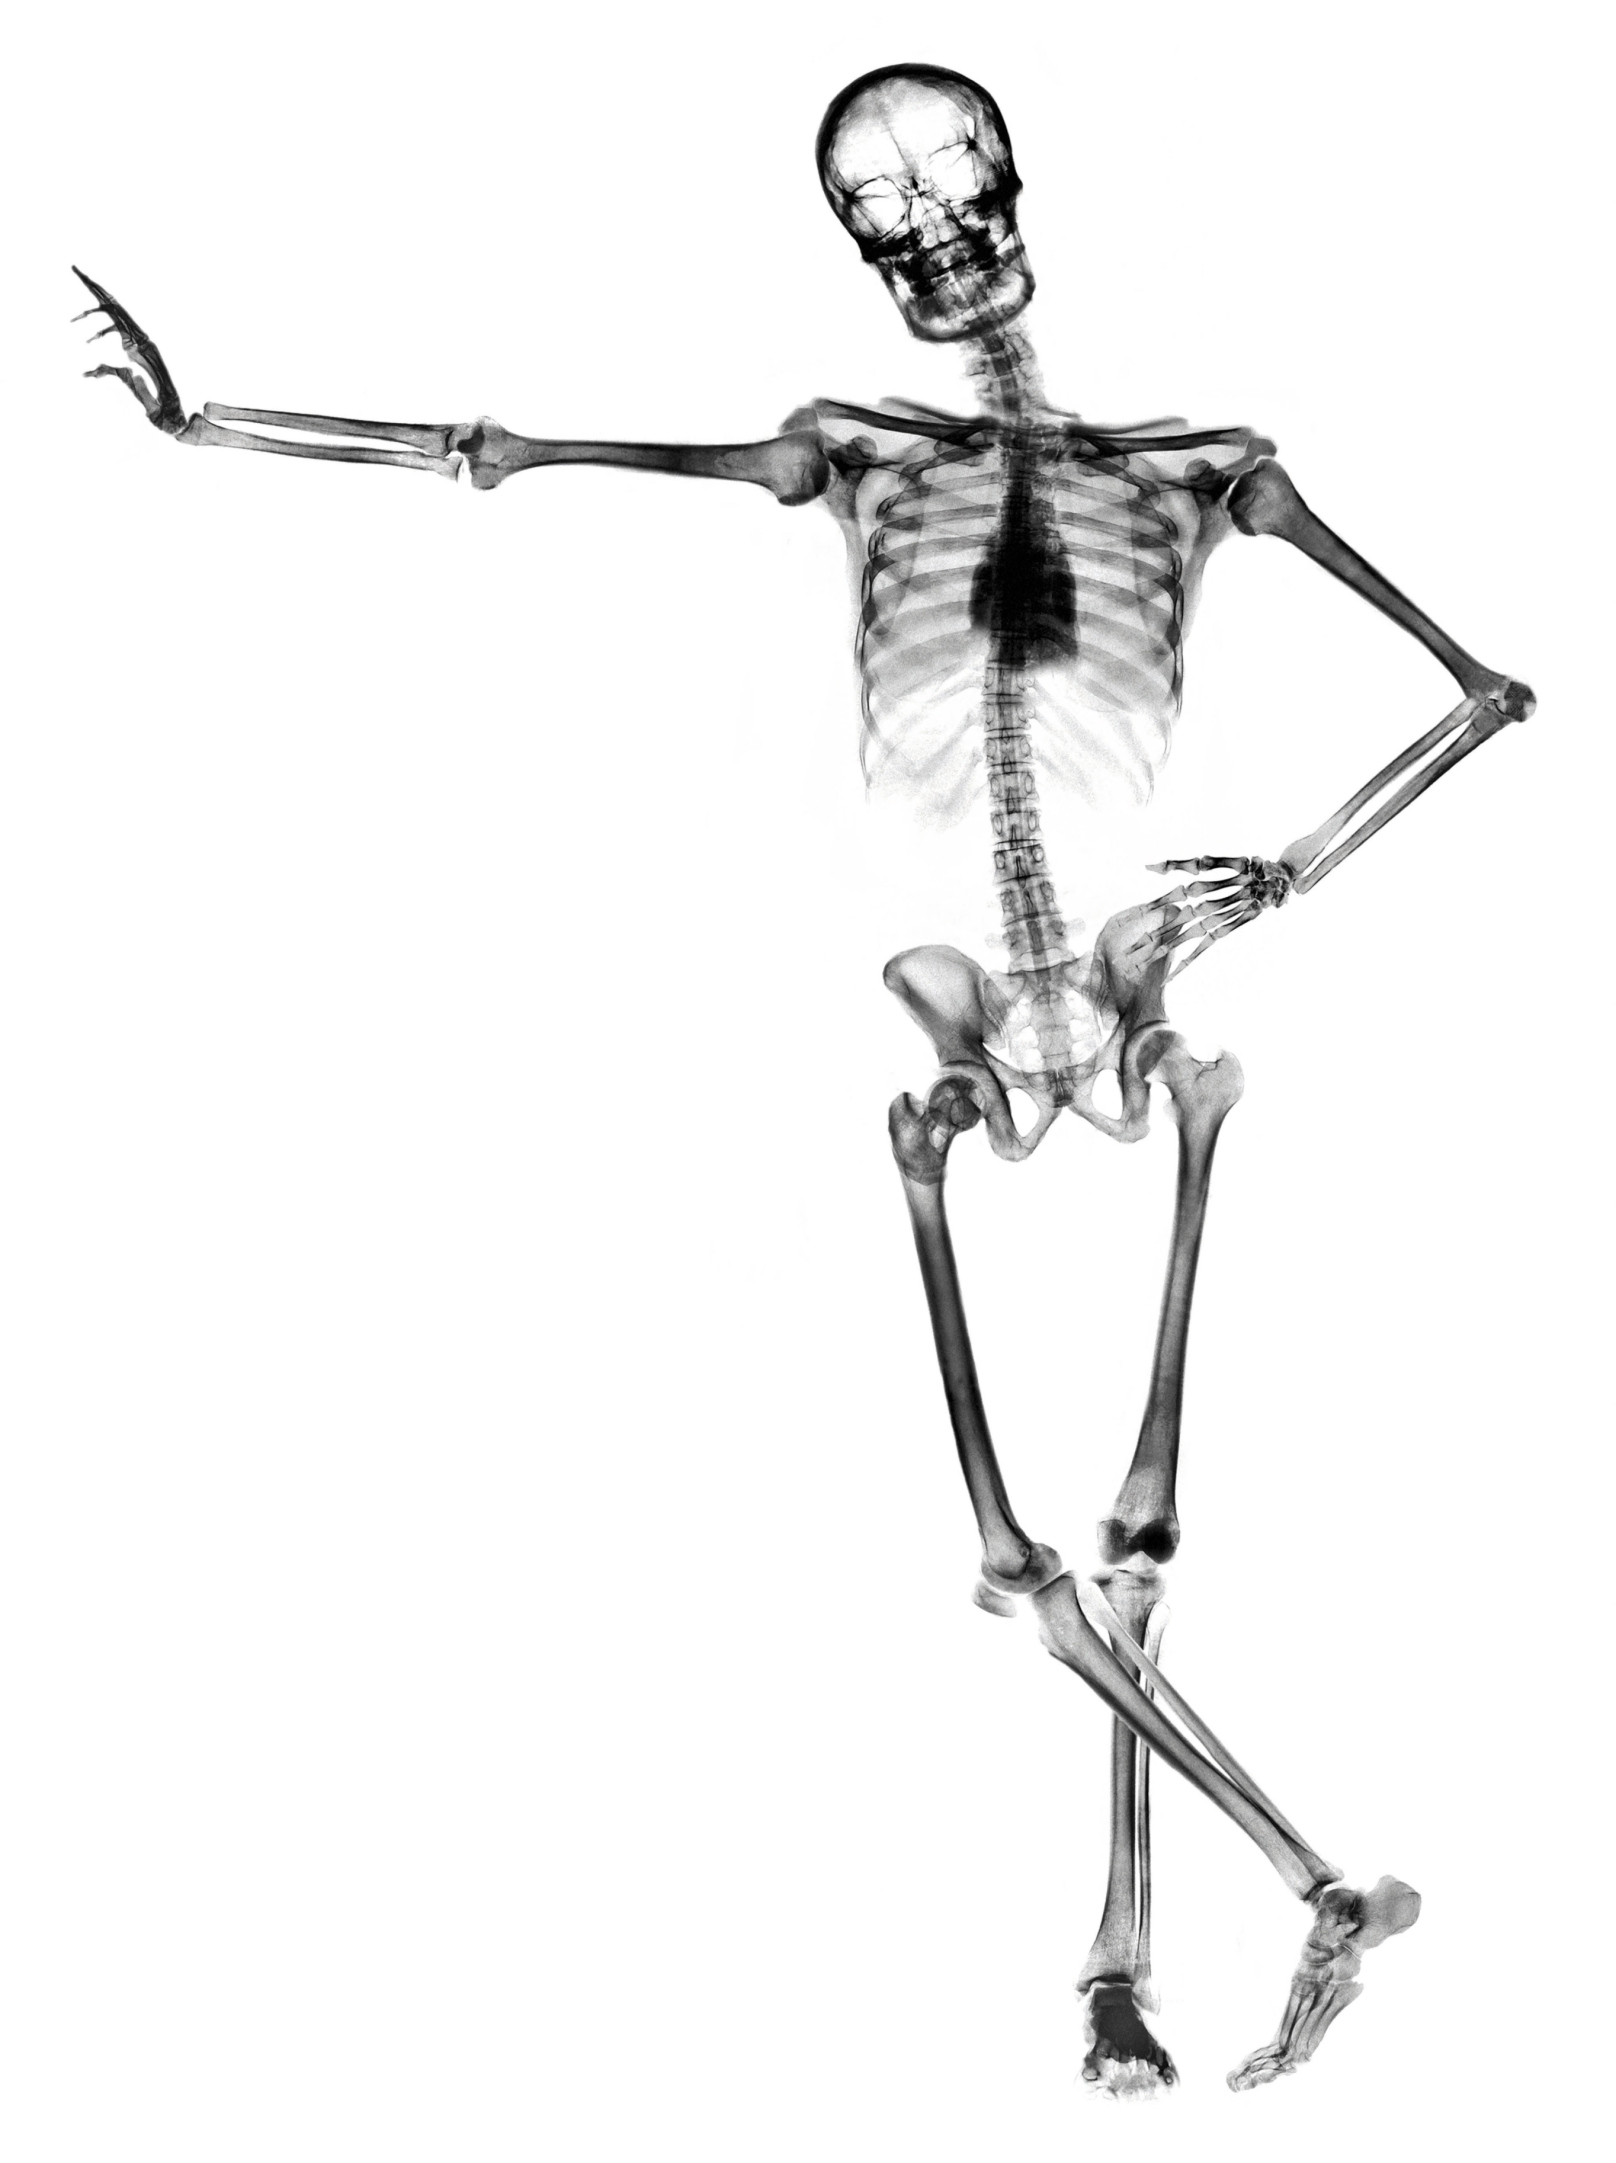 Снимок скелета